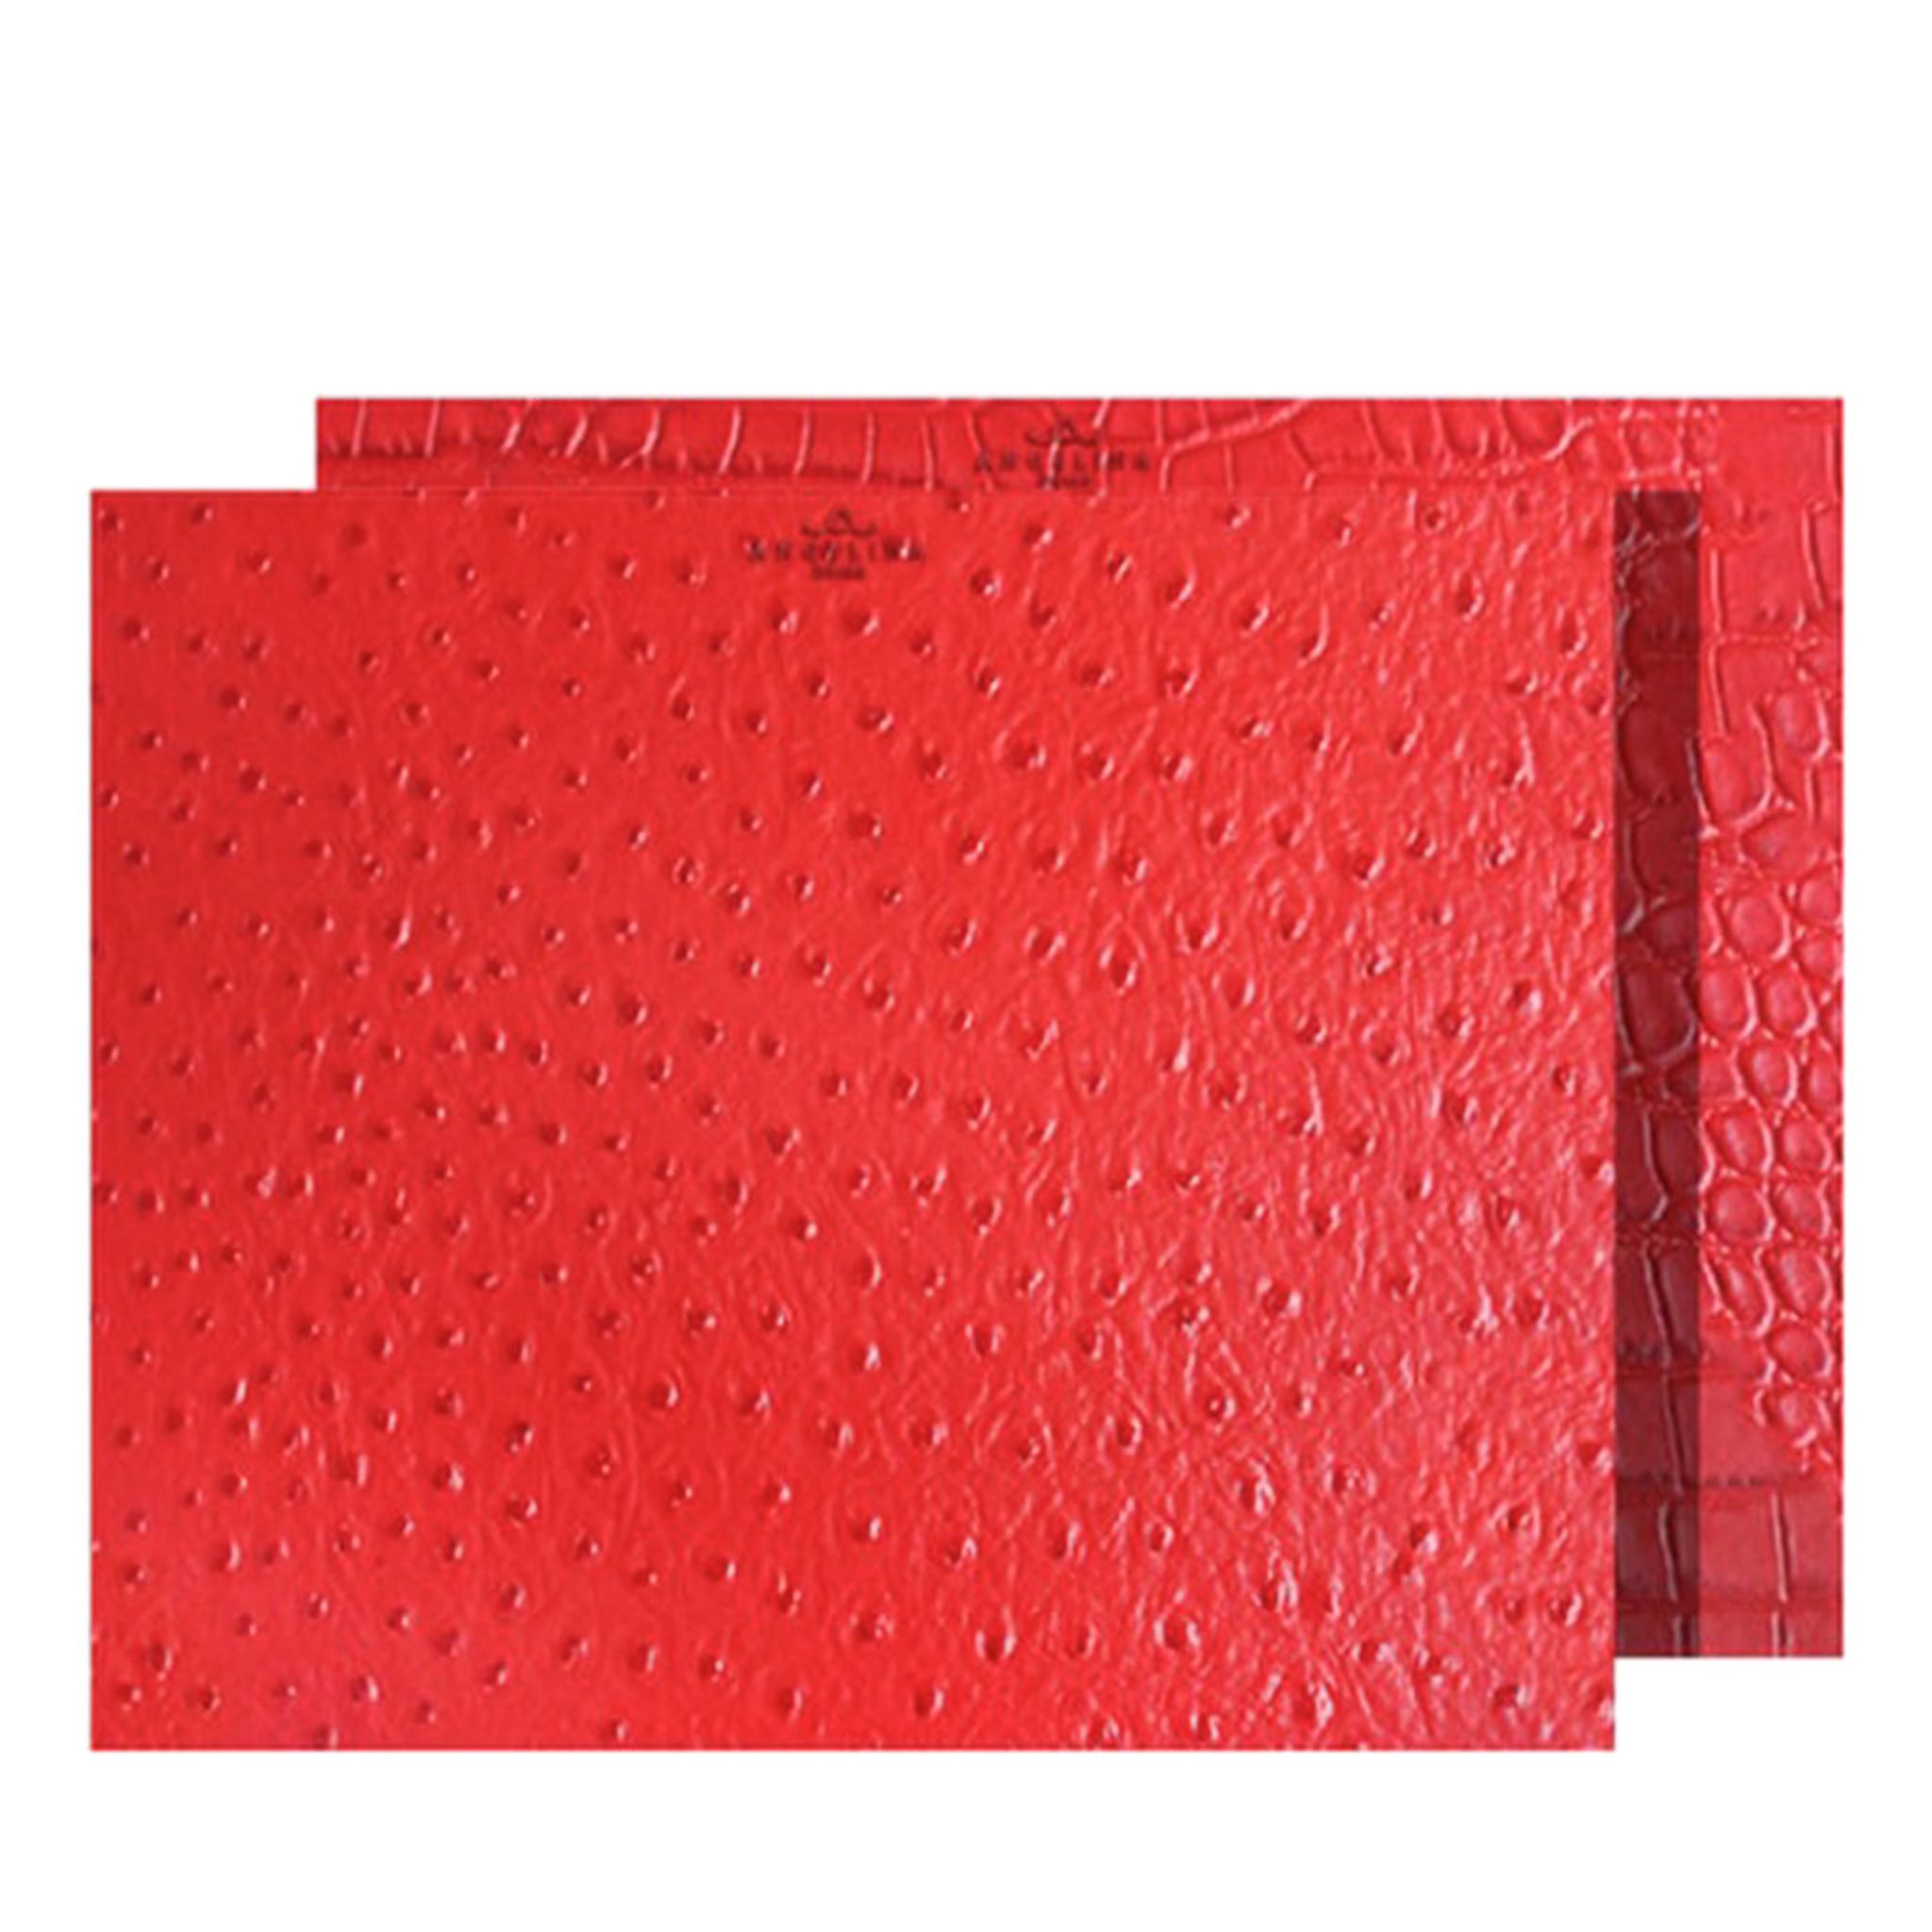 Kenya Medium Set of 2 Rectangular Red Leather Placemats - Main view